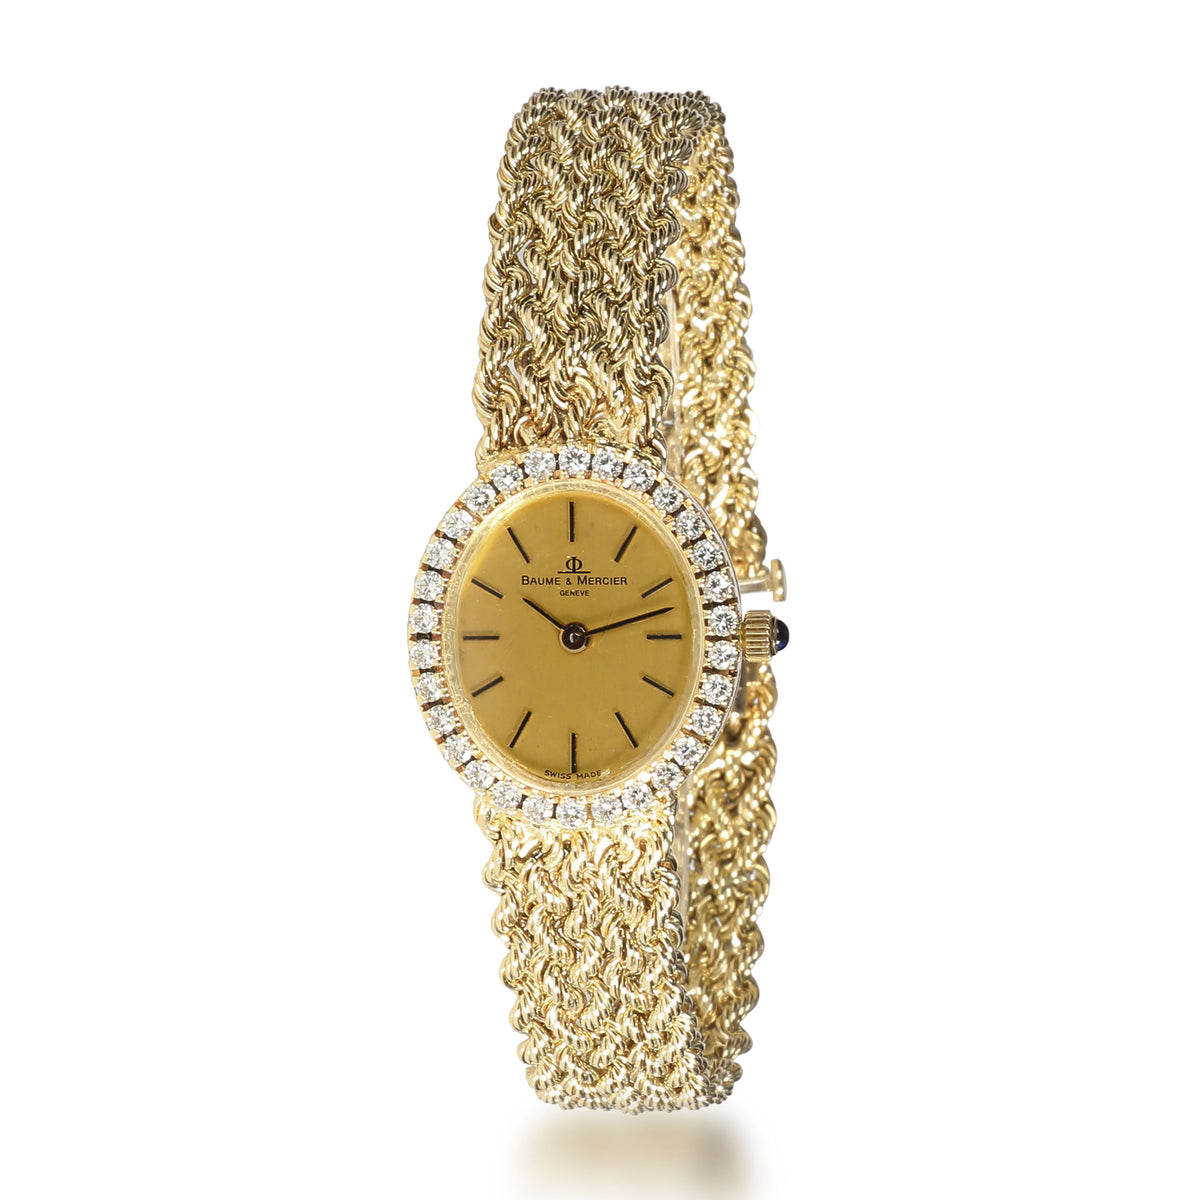 Baume & Mercier Dress 98522 9 Women's Watch in 14kt Yellow Gold